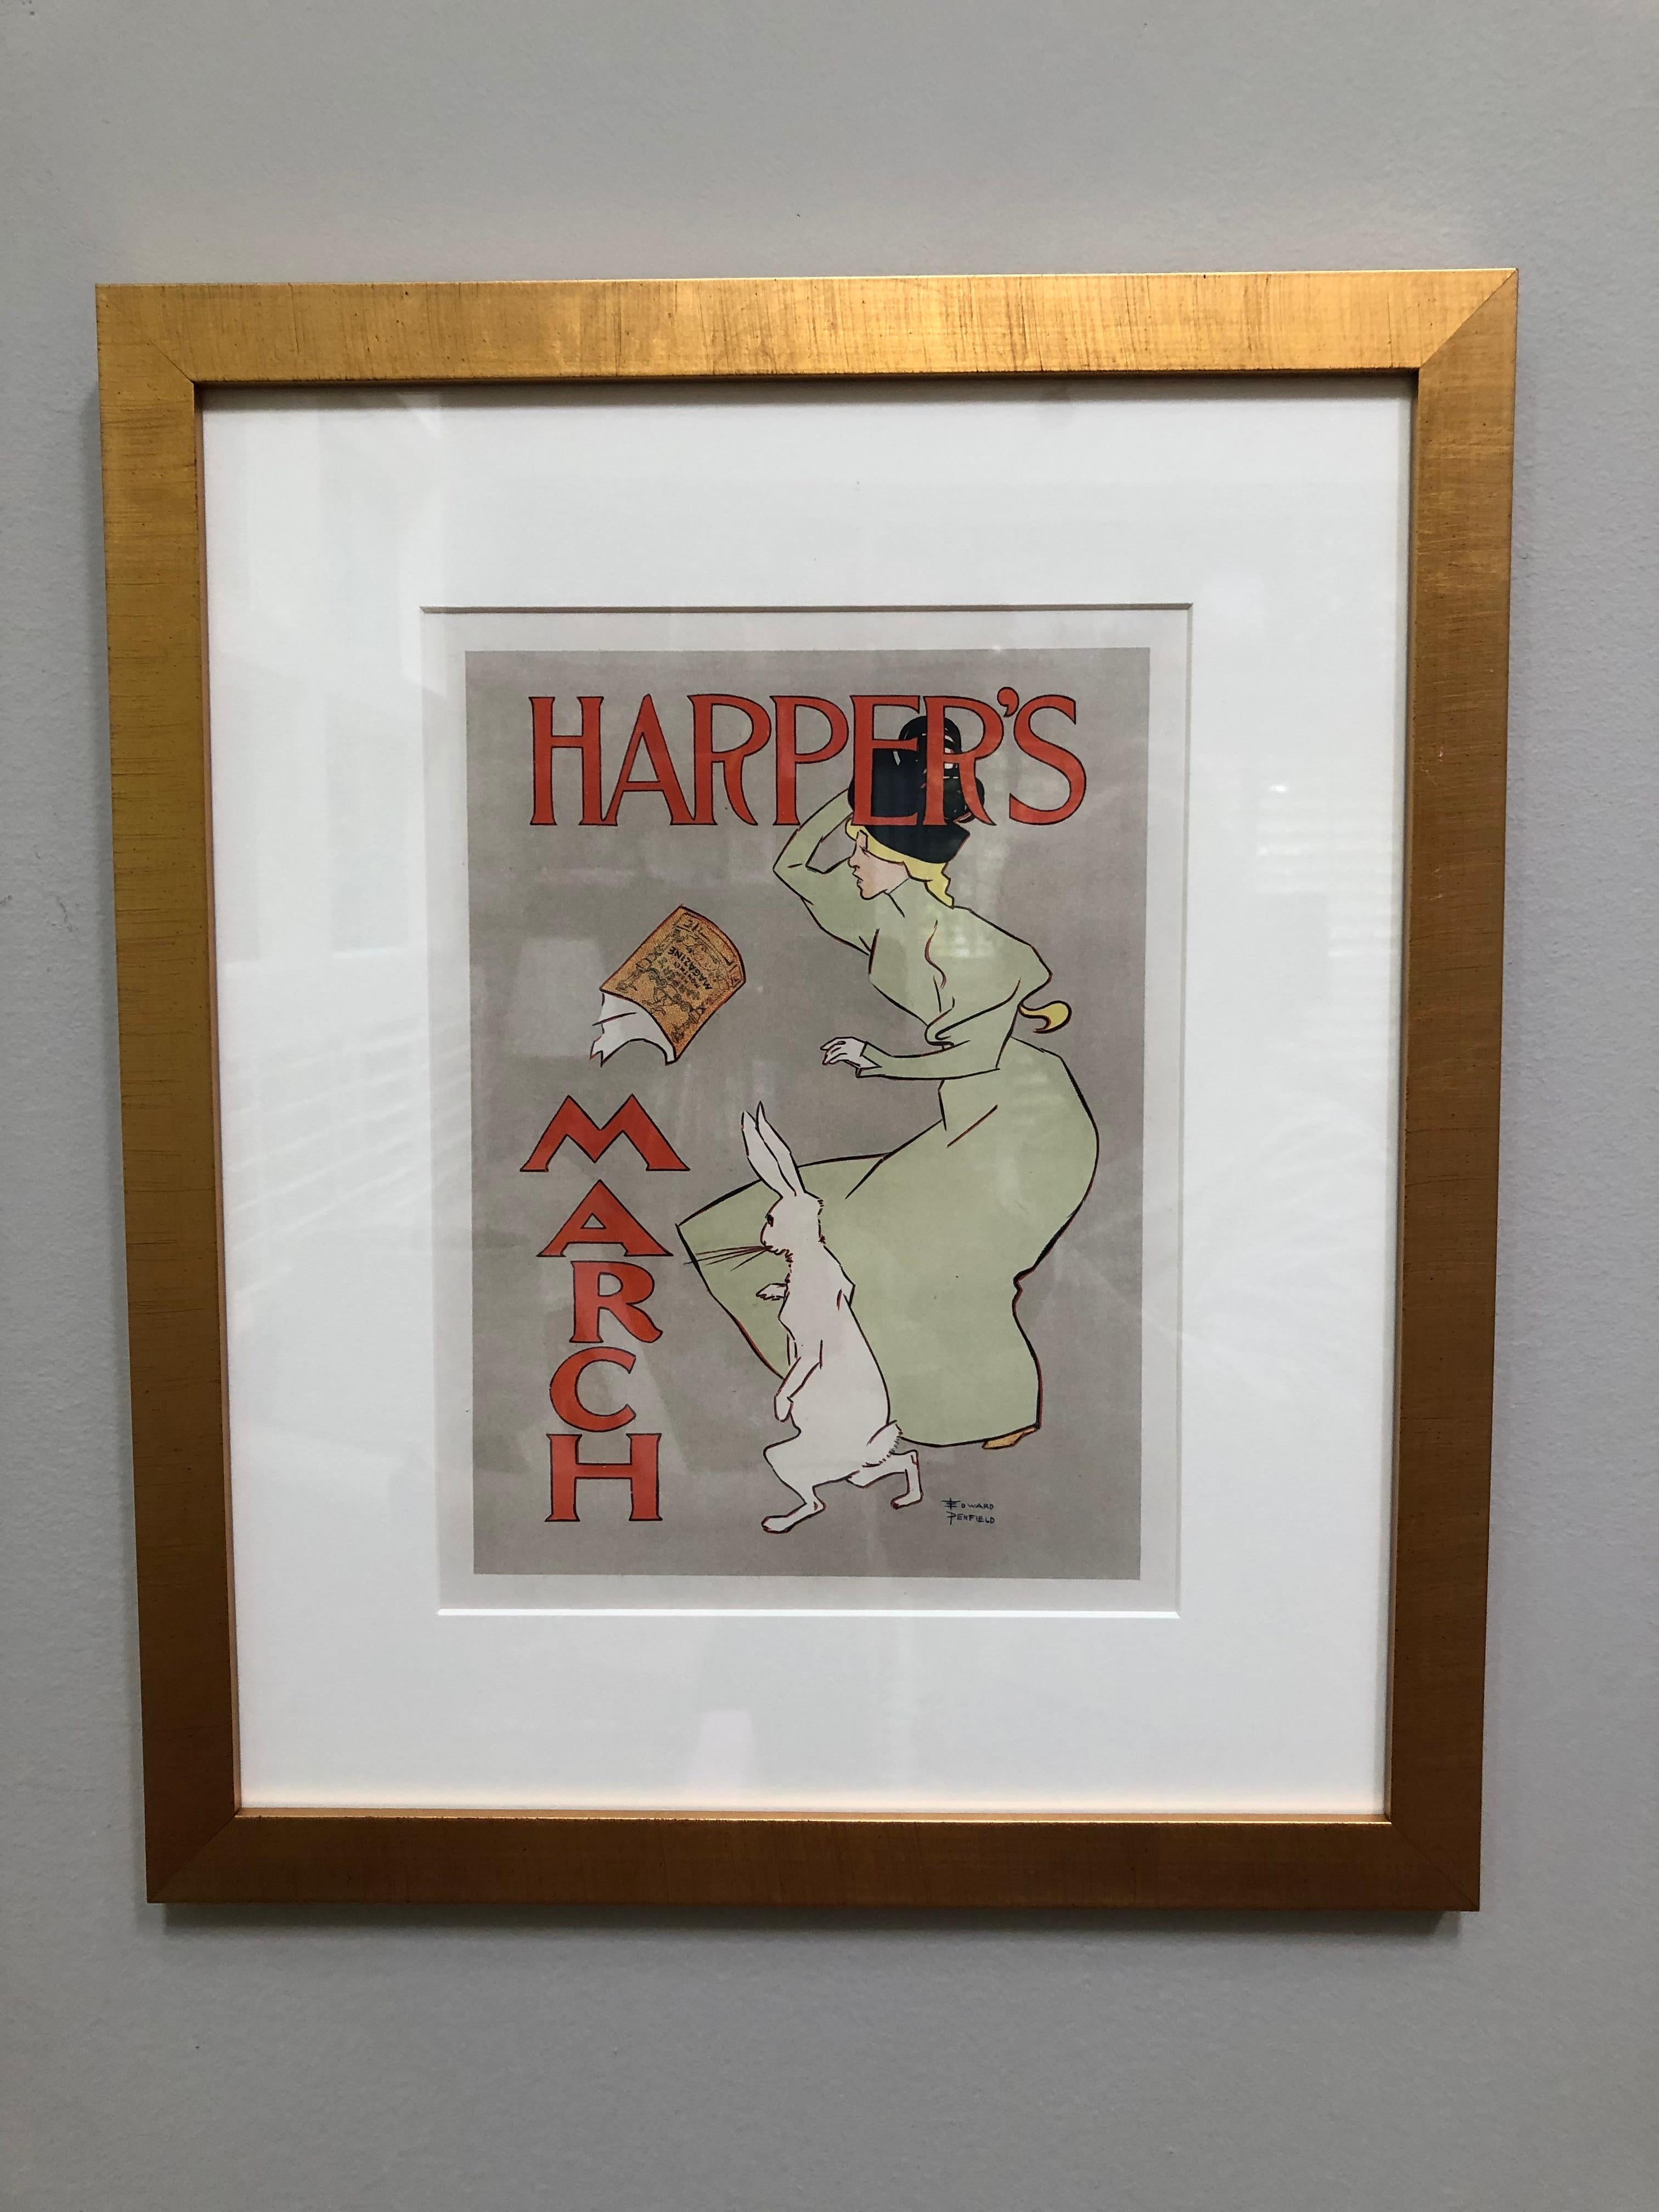 Harpers Magazine "March Hare" Maitres de l'Affiche